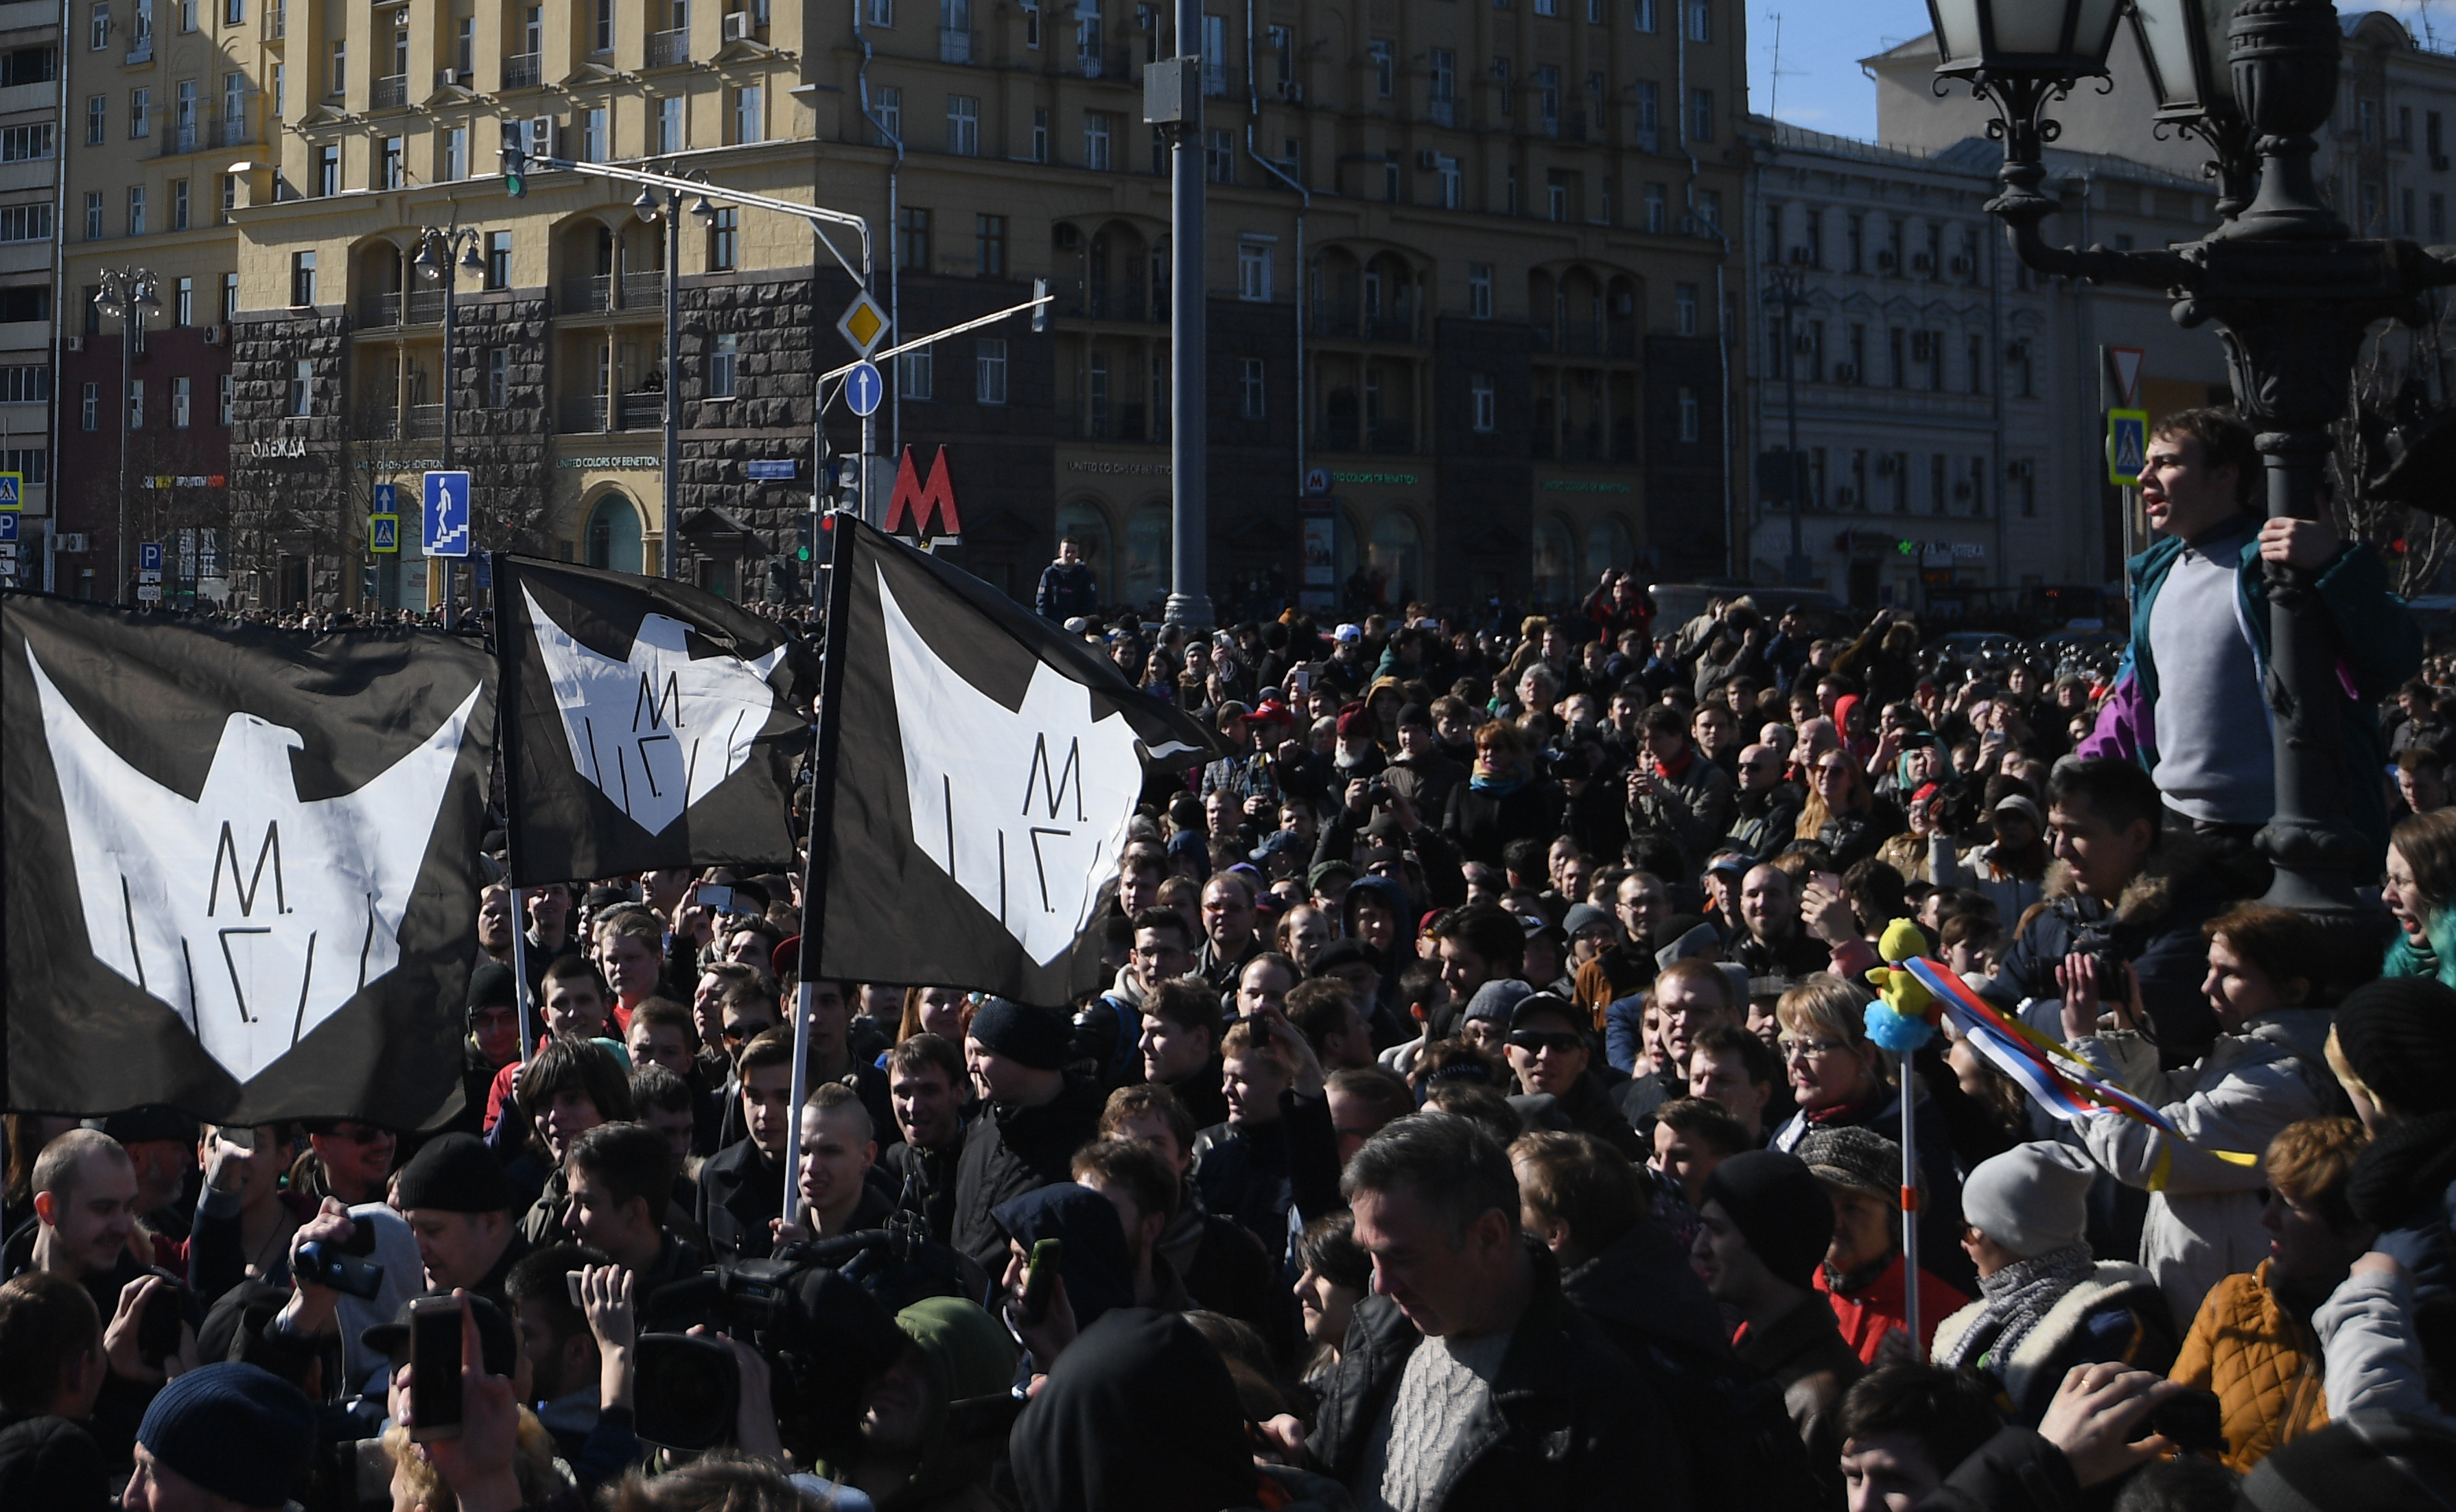 Участники несанкционированной акции на Пушкинской площади в Москве.&nbsp; &nbsp;
Фото: &copy; РИА Новости/Рамиль Ситдиков